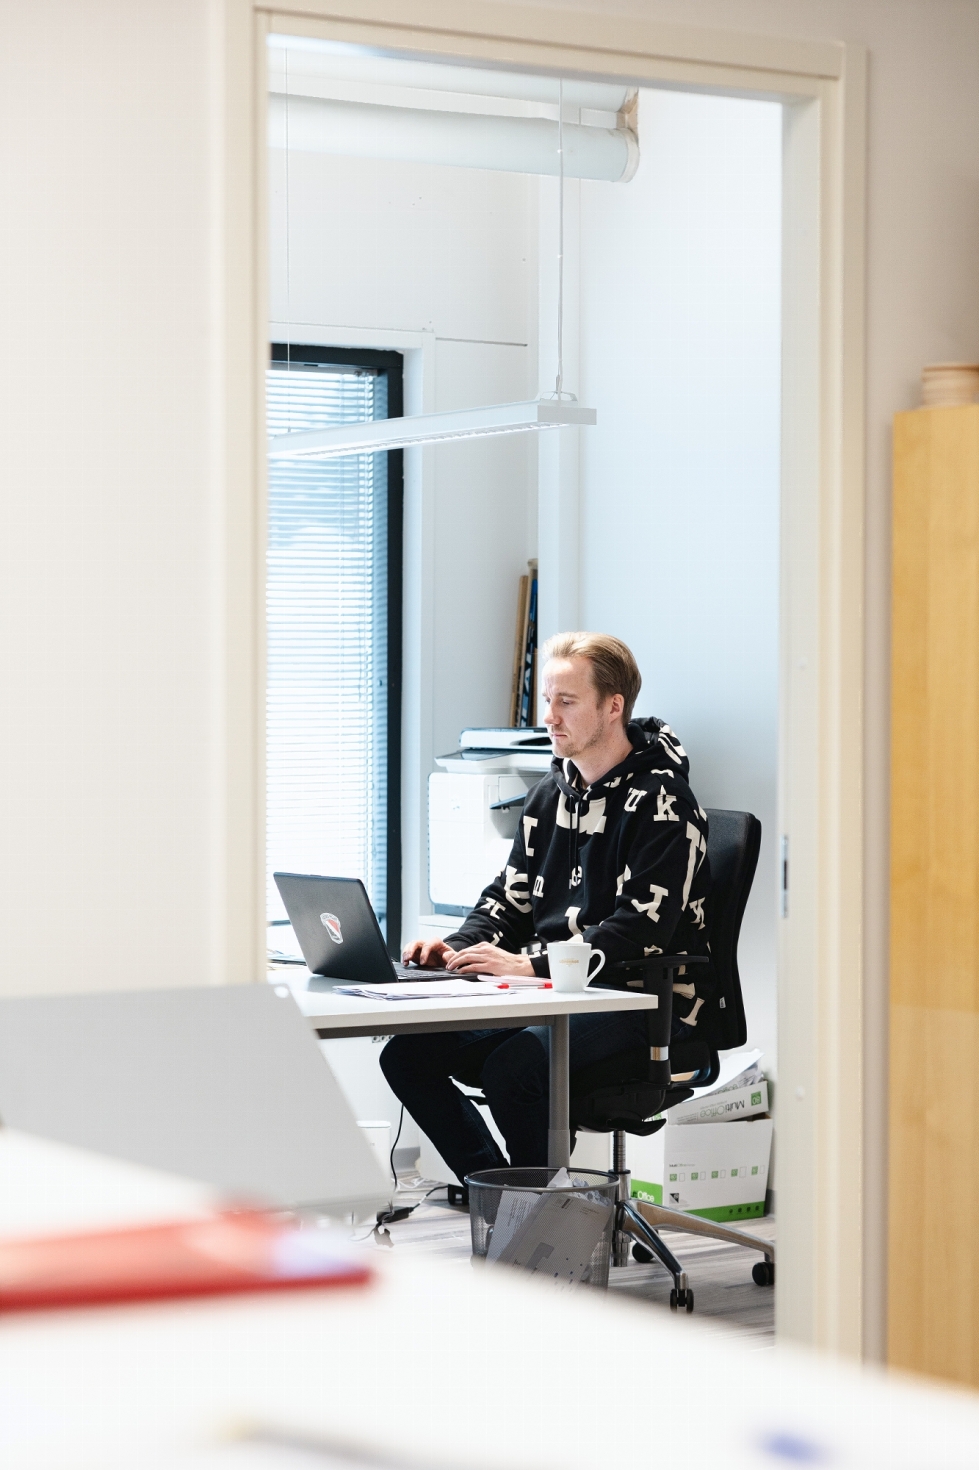 Joensuun Kiekko-Poikien manageri Jaakko Lipponen kertoo olevansa melko harvoin tietokoneella toimistossa. Yleensä hän viilettää palavereissa tai on puhelimessa.